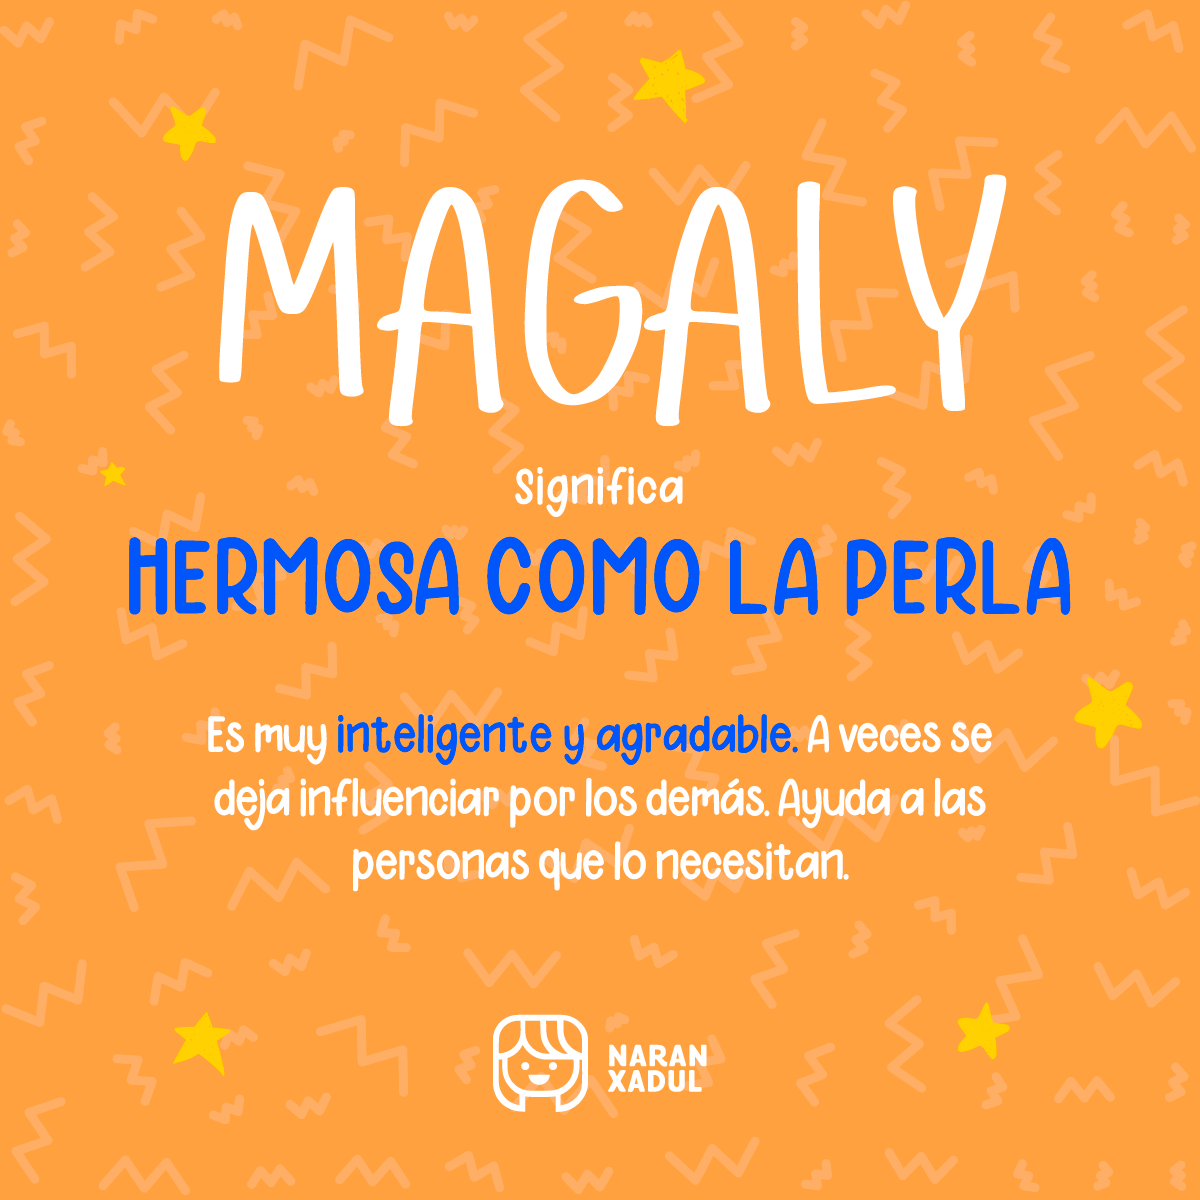 Significado de Magaly